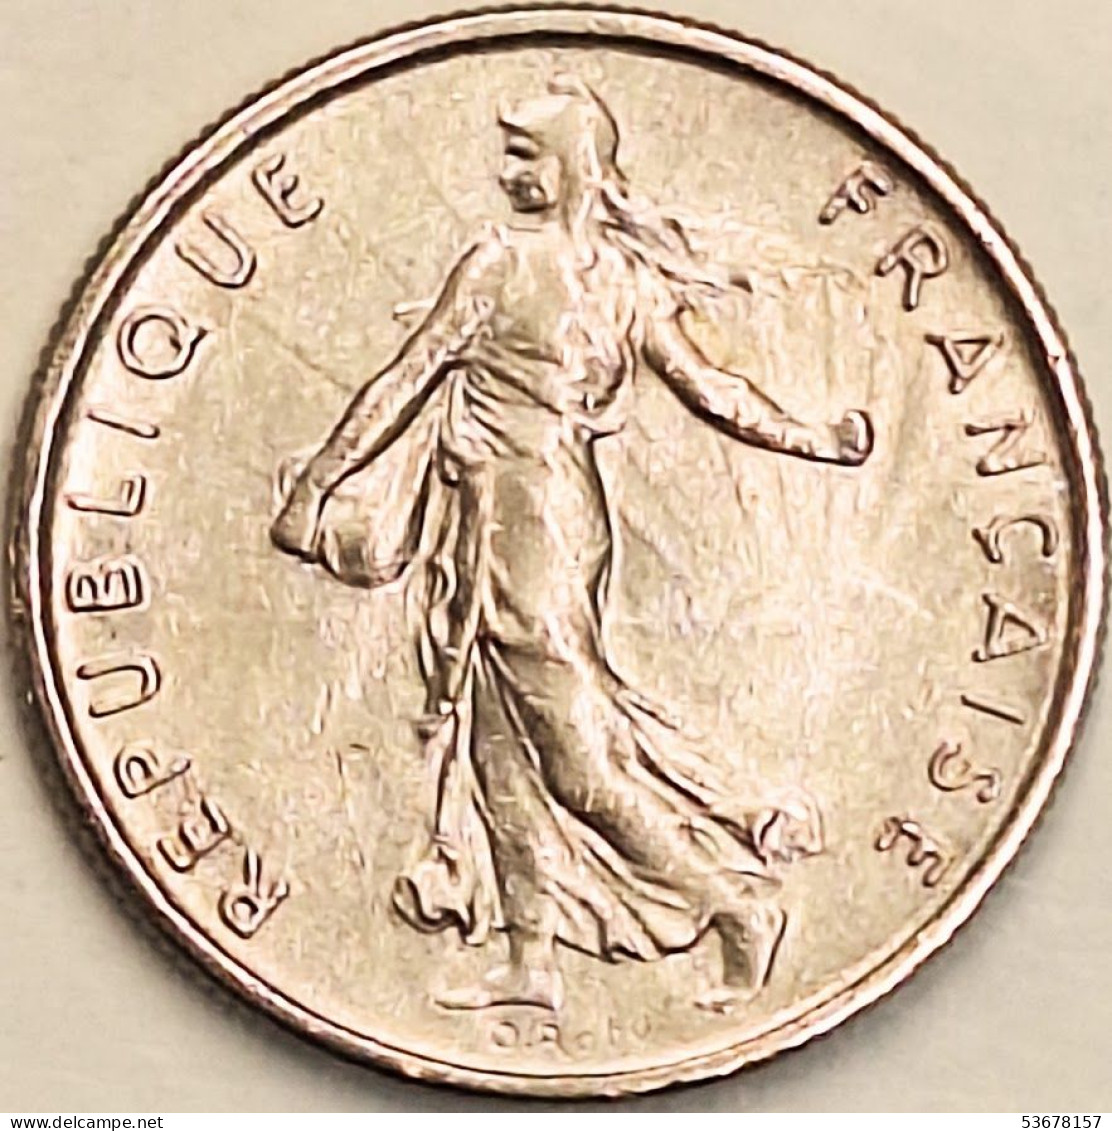 France - 1/2 Franc 1972, KM# 931.1 (#4291) - 1/2 Franc